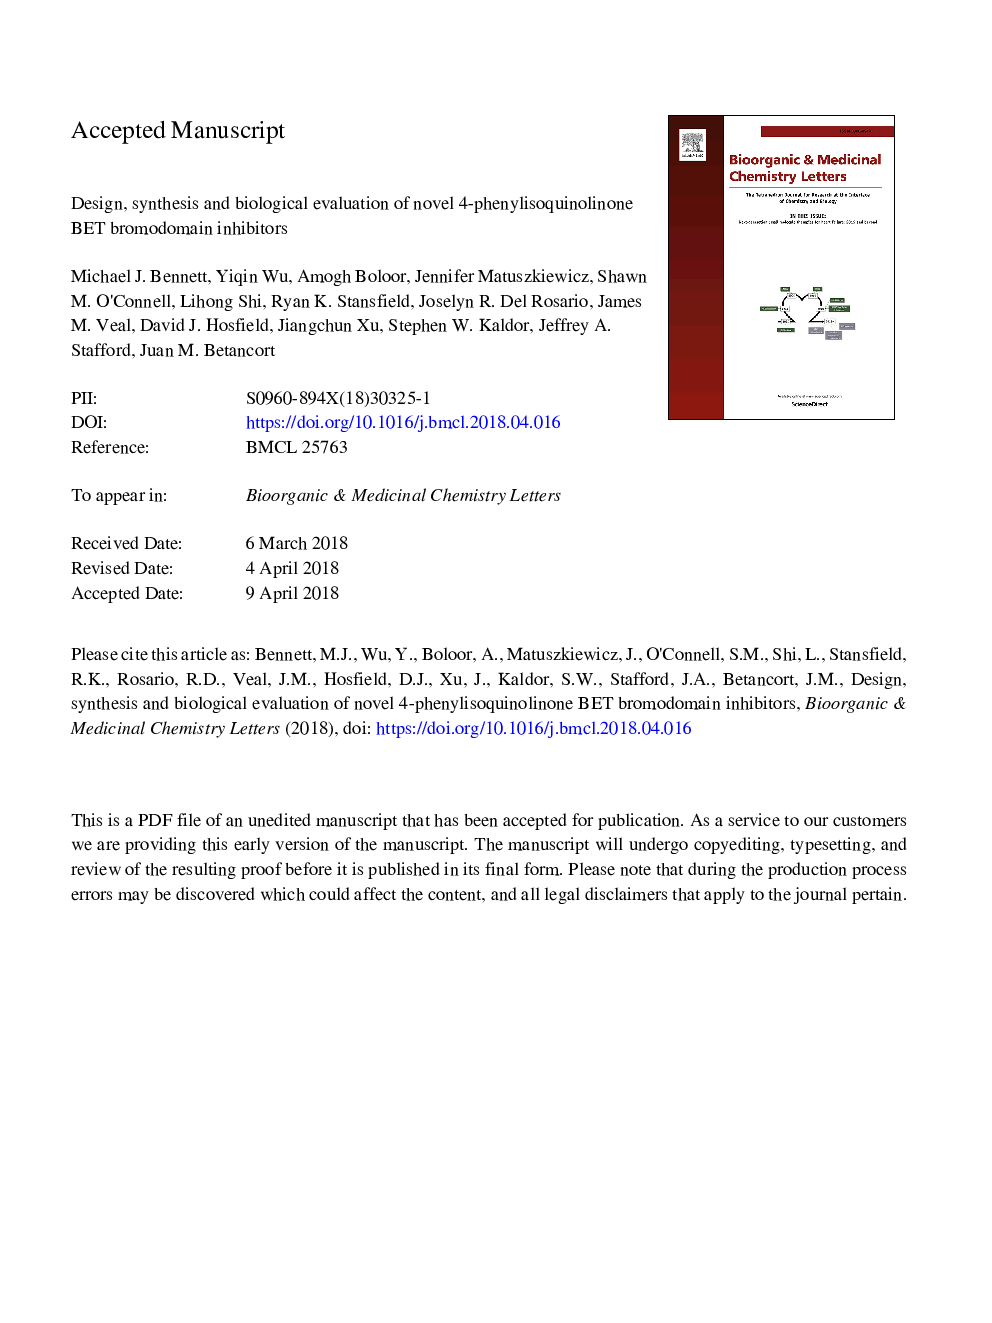 Design, synthesis and biological evaluation of novel 4-phenylisoquinolinone BET bromodomain inhibitors